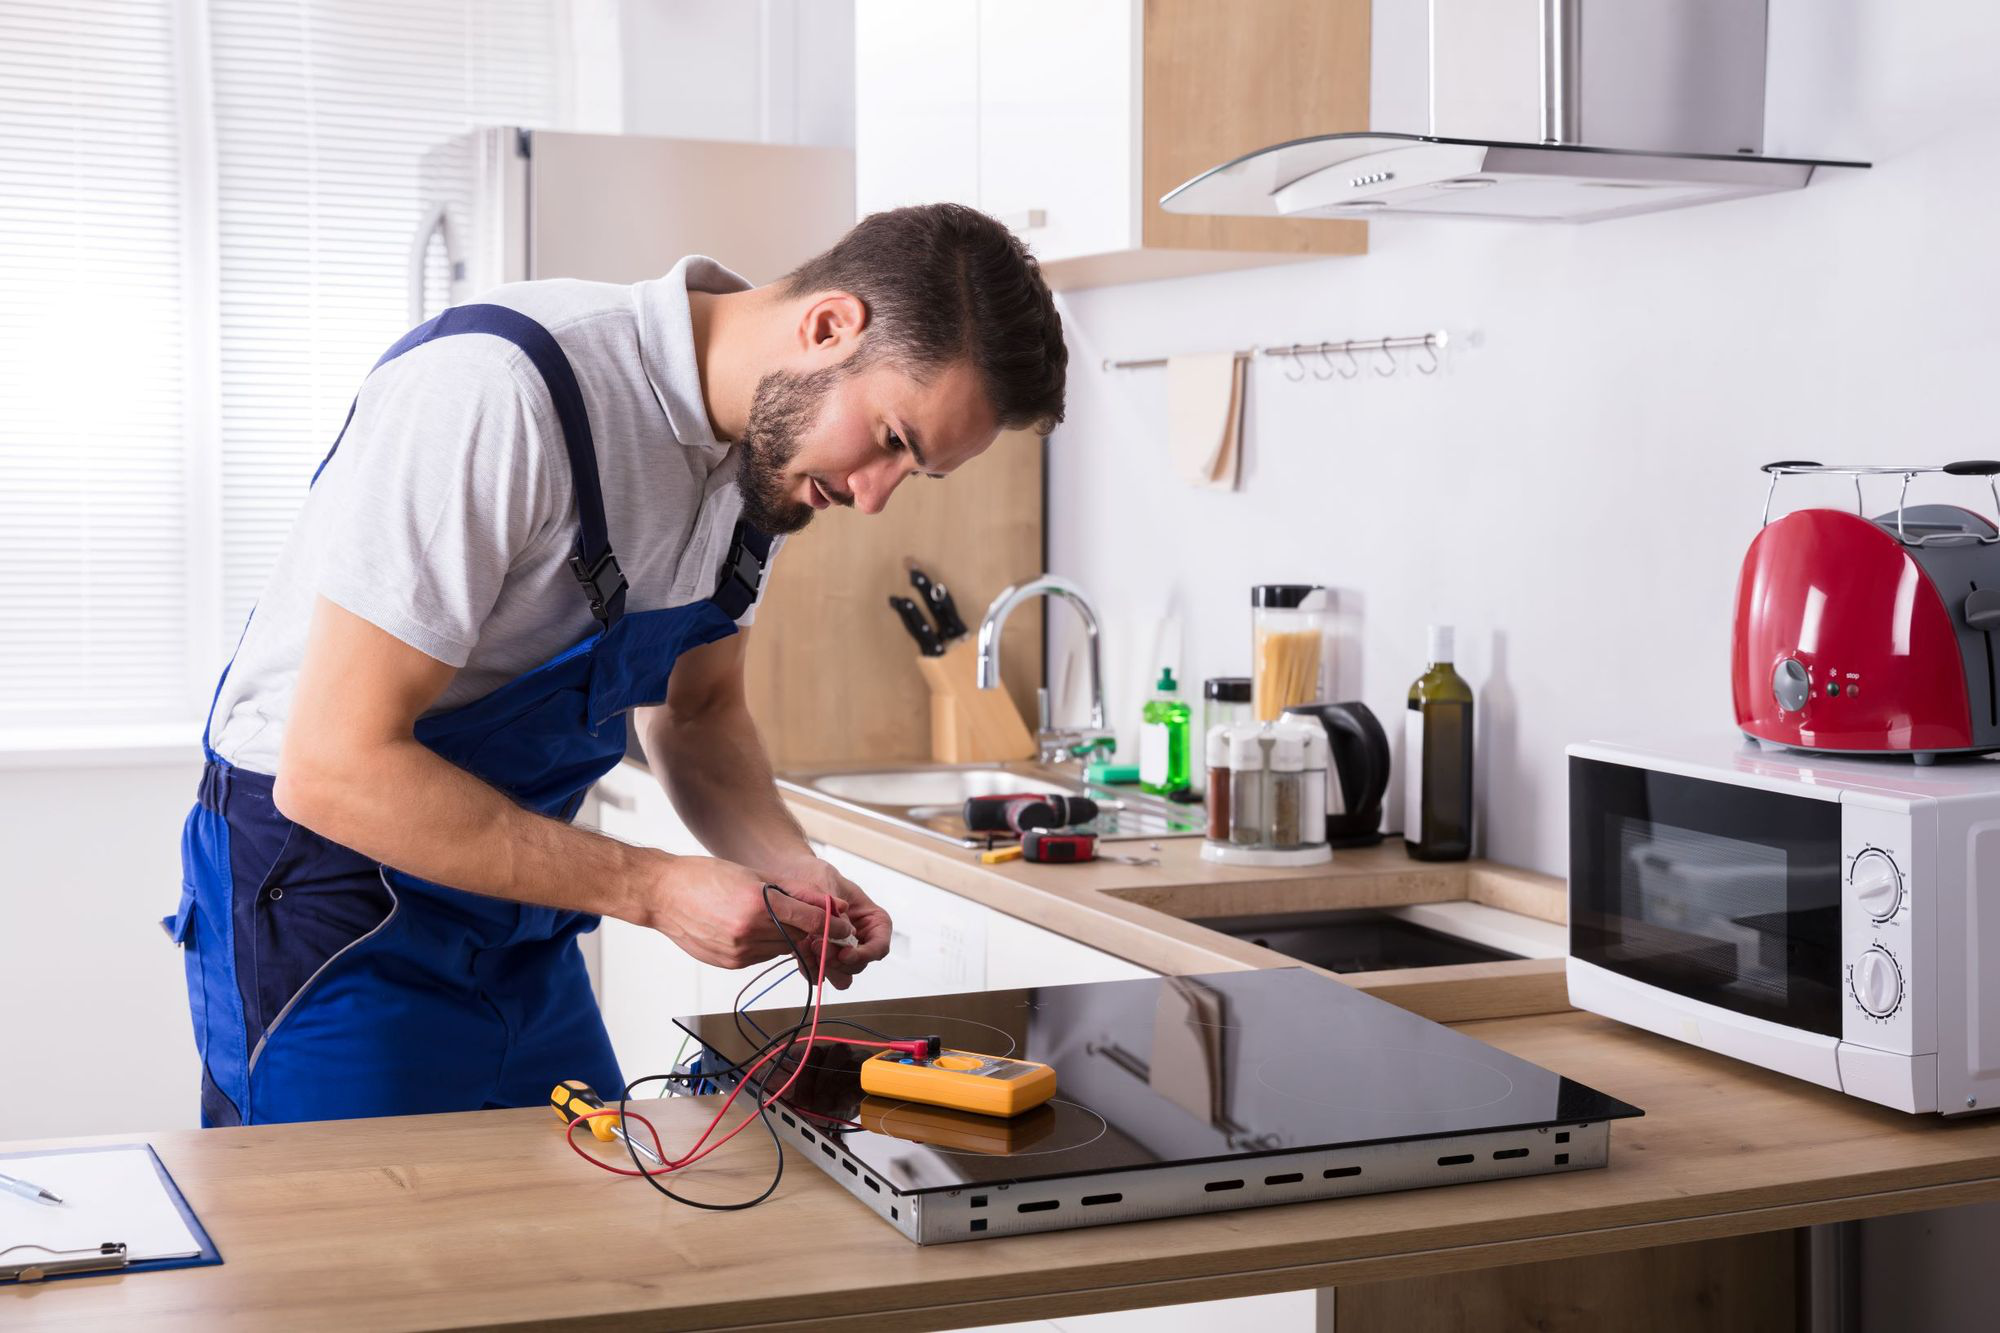 Lỗi cảm ứng nhiệt: Báo giá sửa chữa bếp điện từ có đắt không?